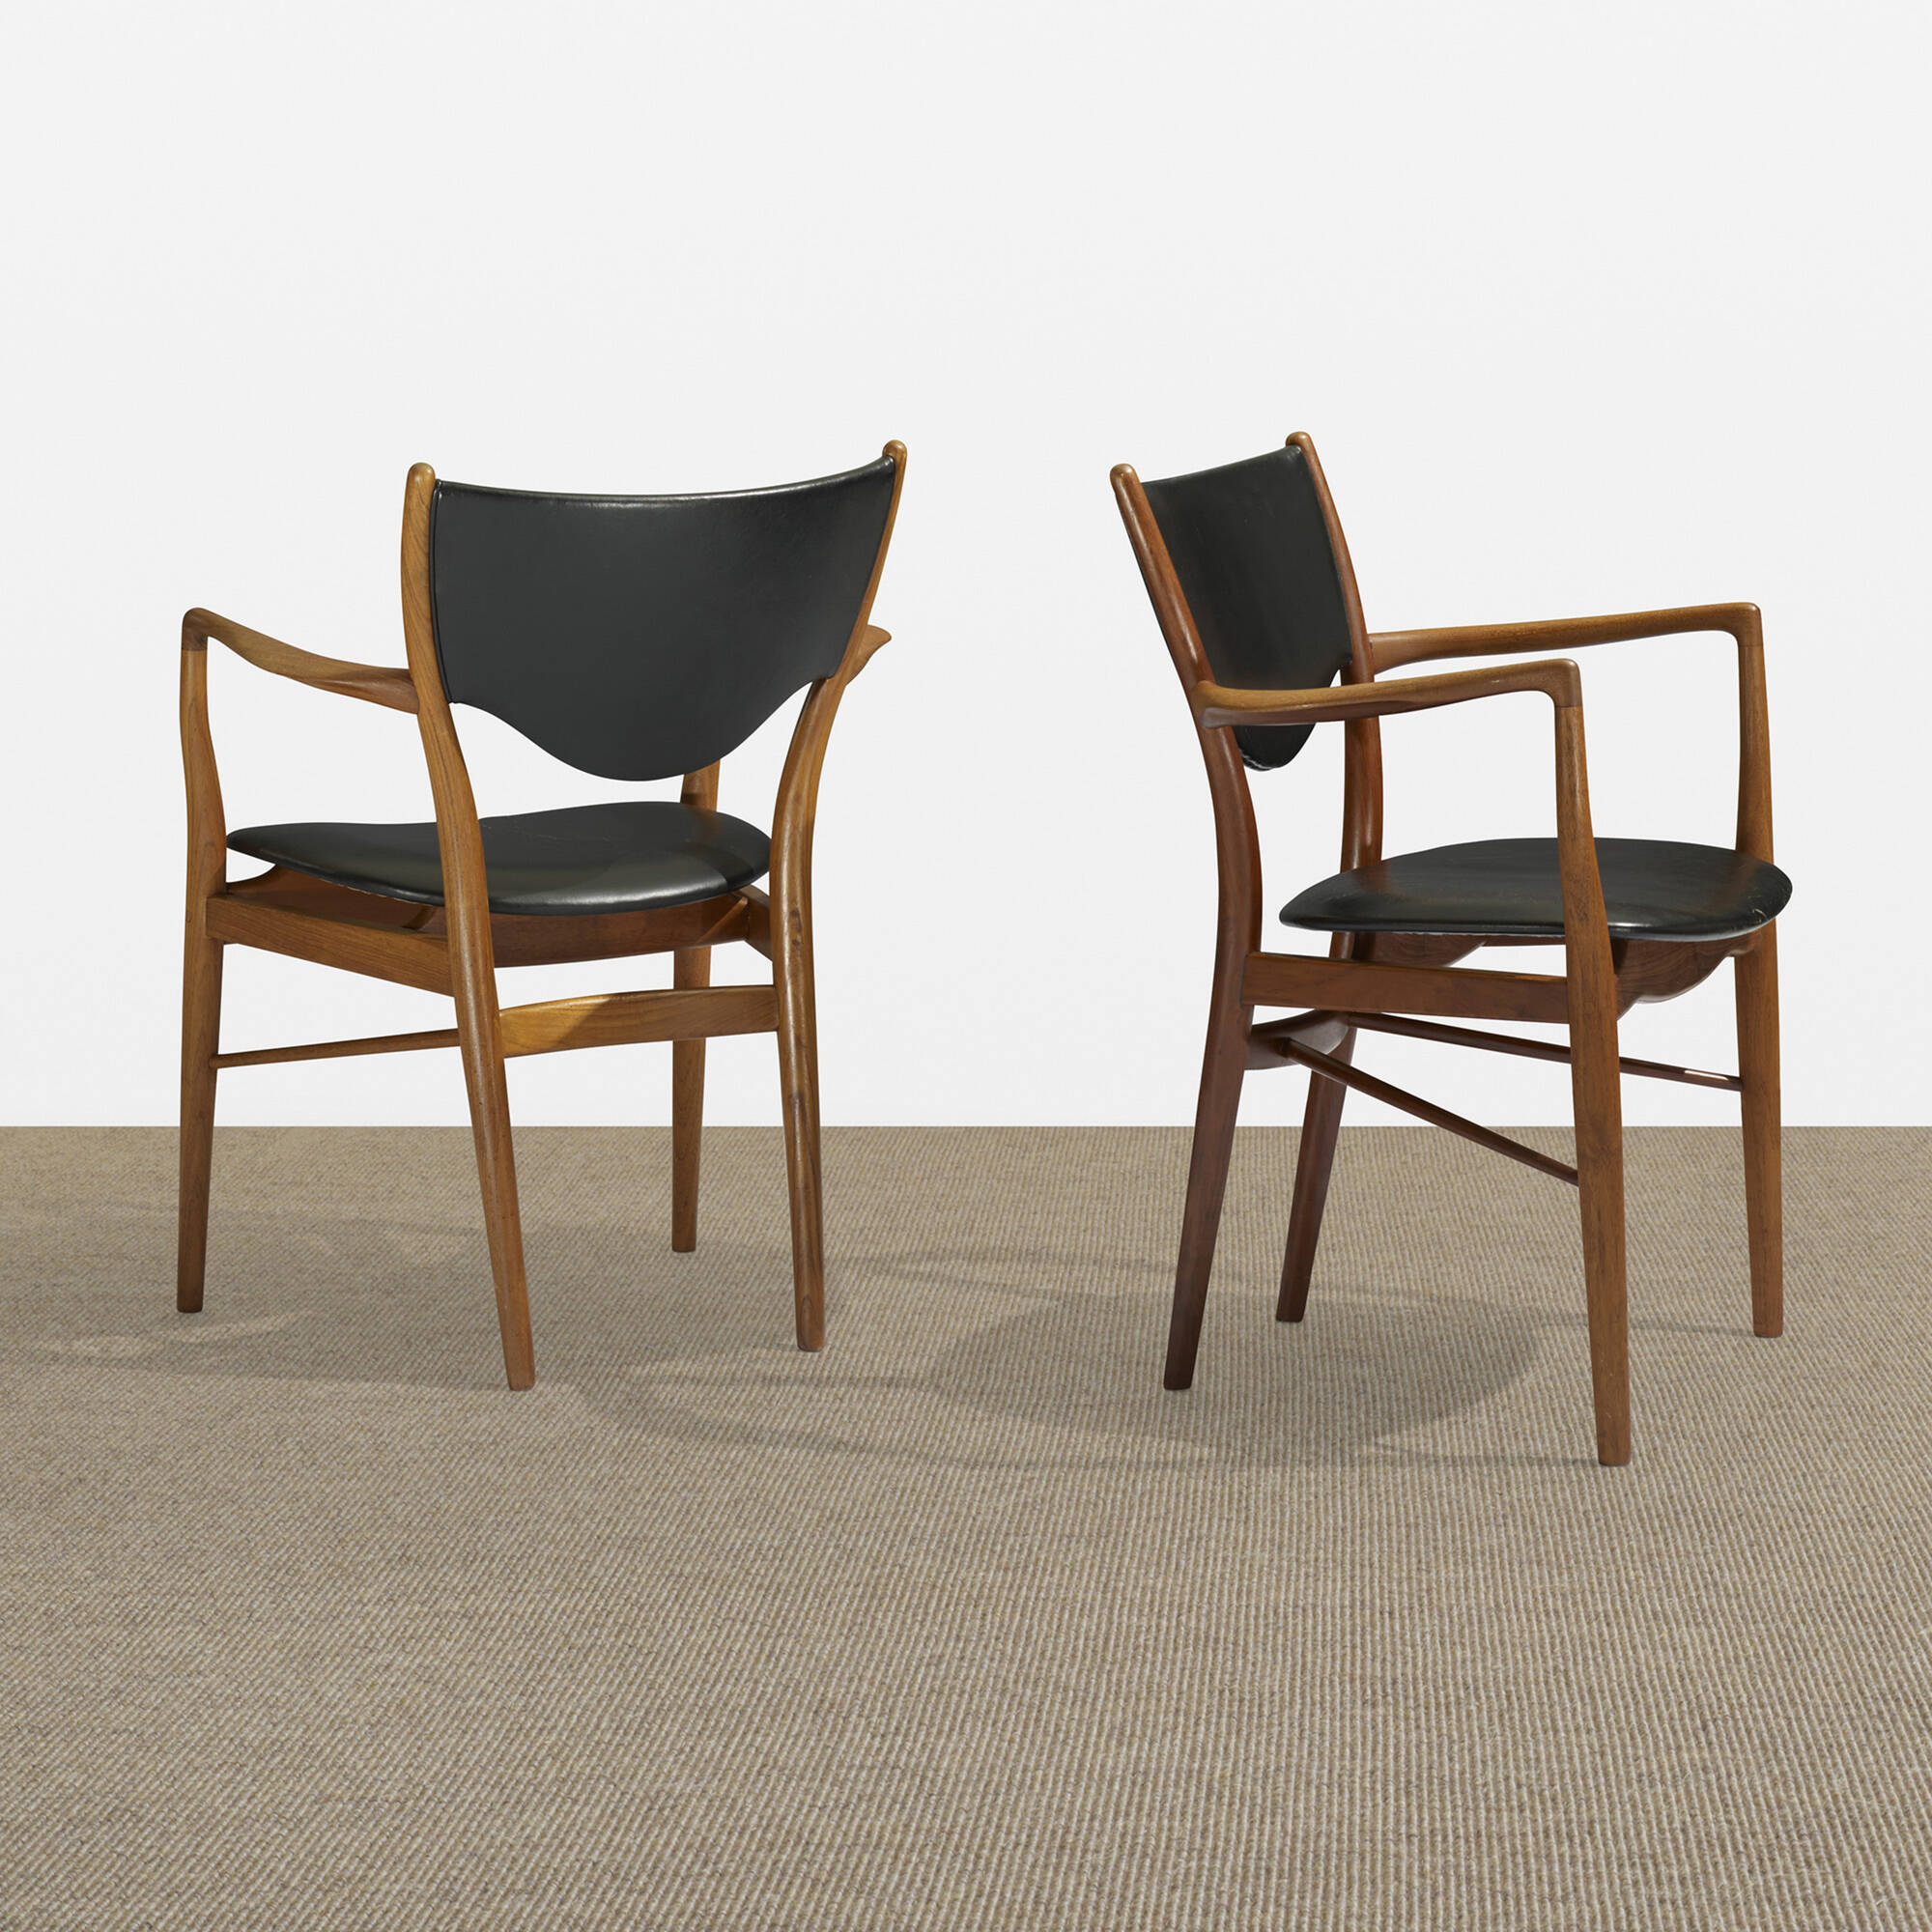 214: FINN JUHL, armchairs, pair < Scandinavian Design, 16 May 2013 